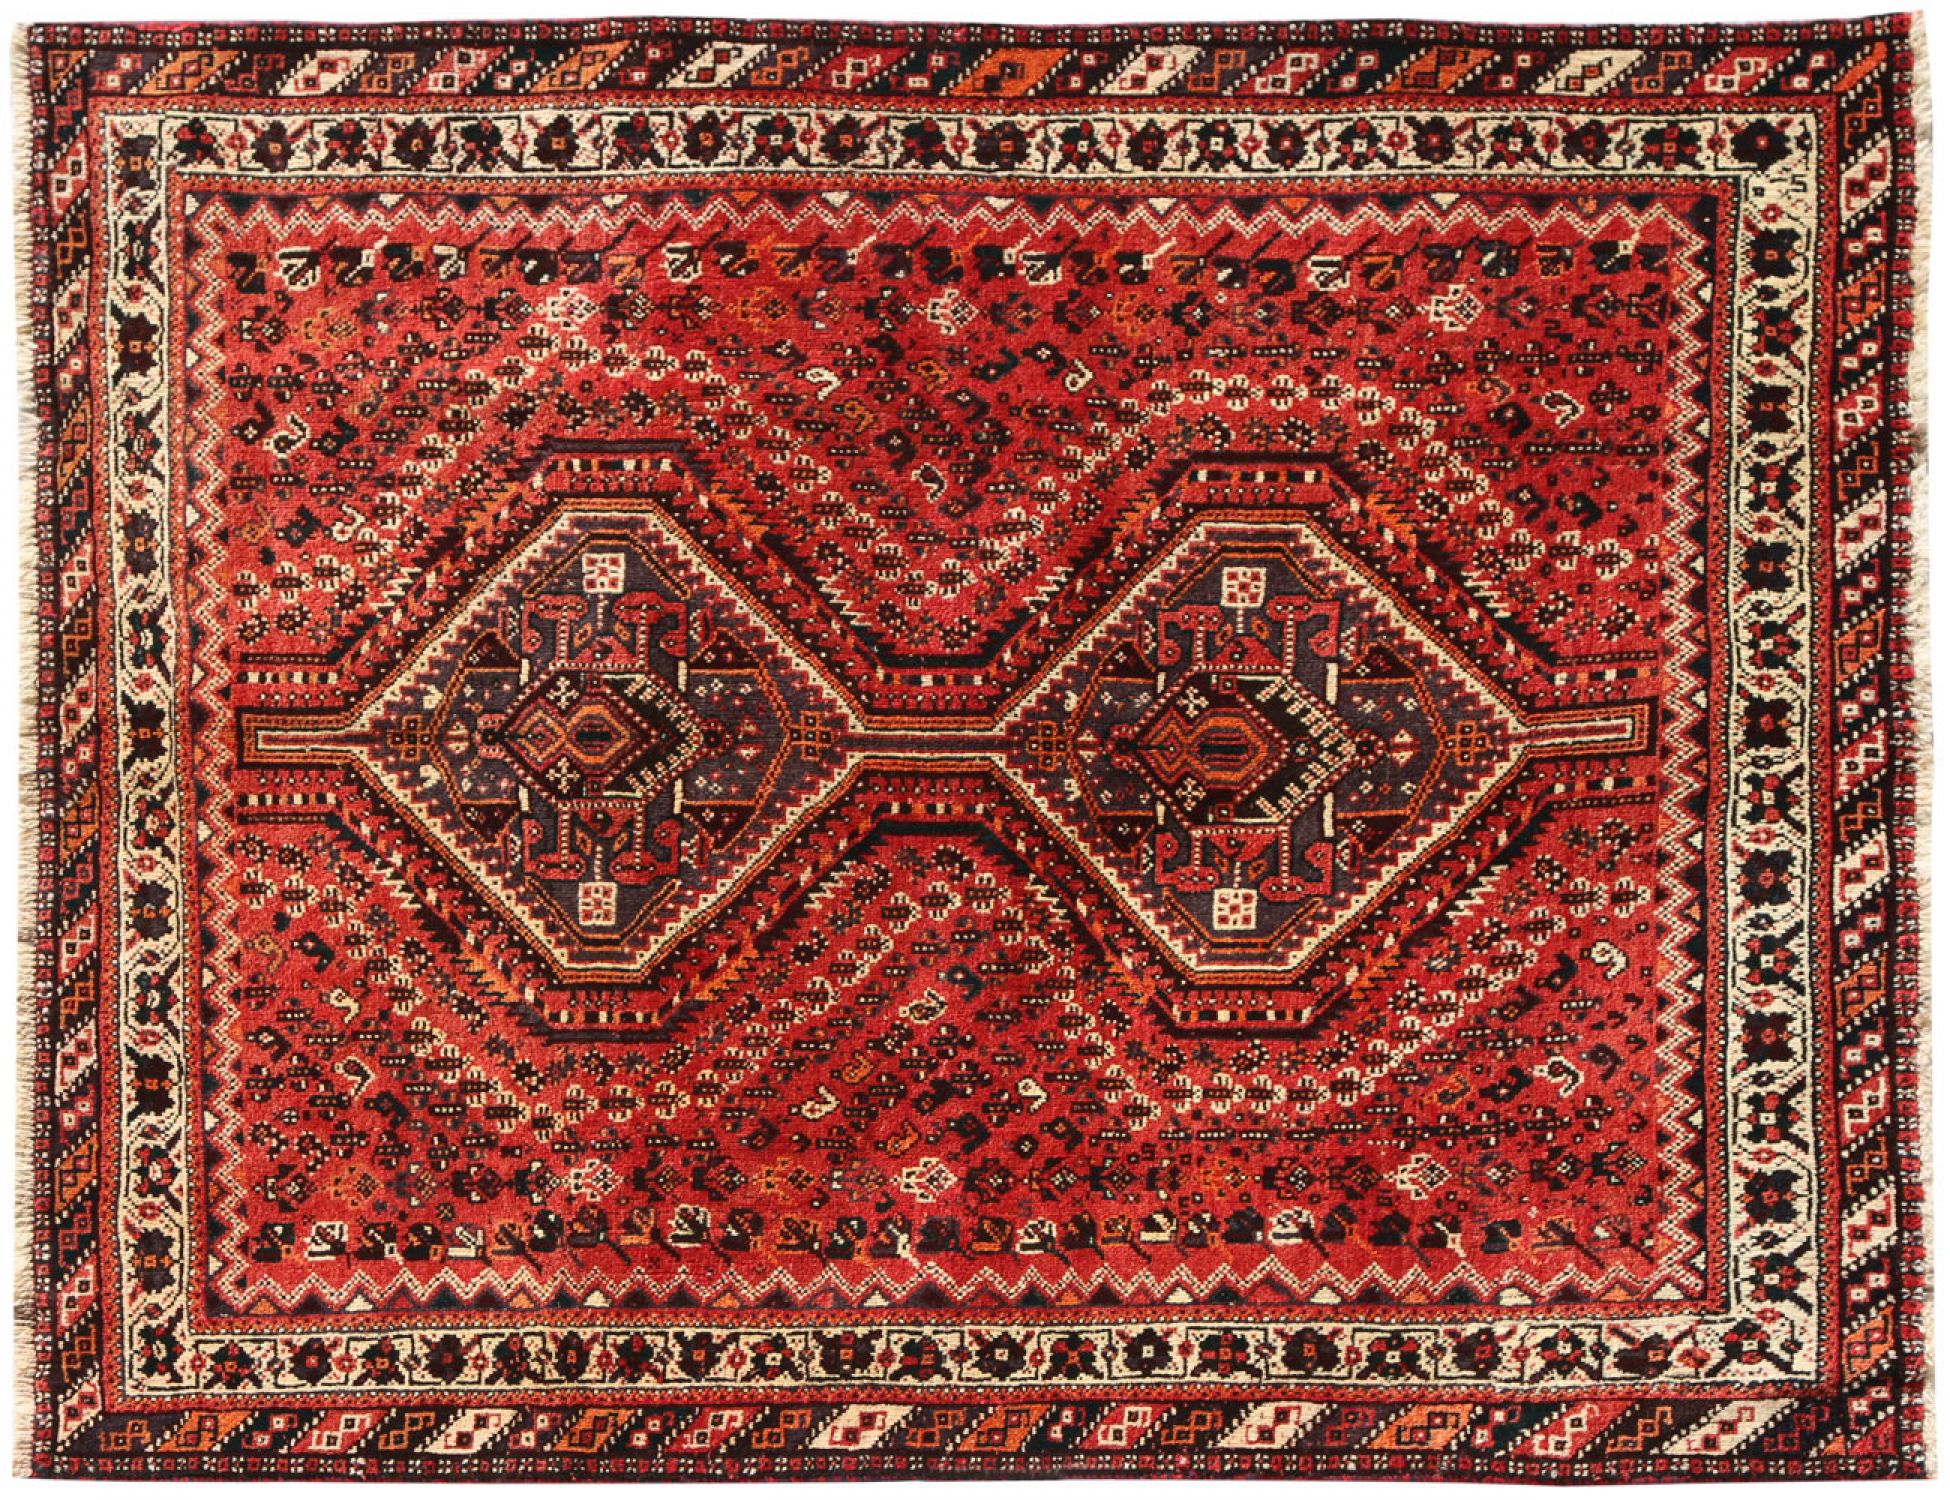 Περσικό    Κόκκινο <br/>203 x 163 cm